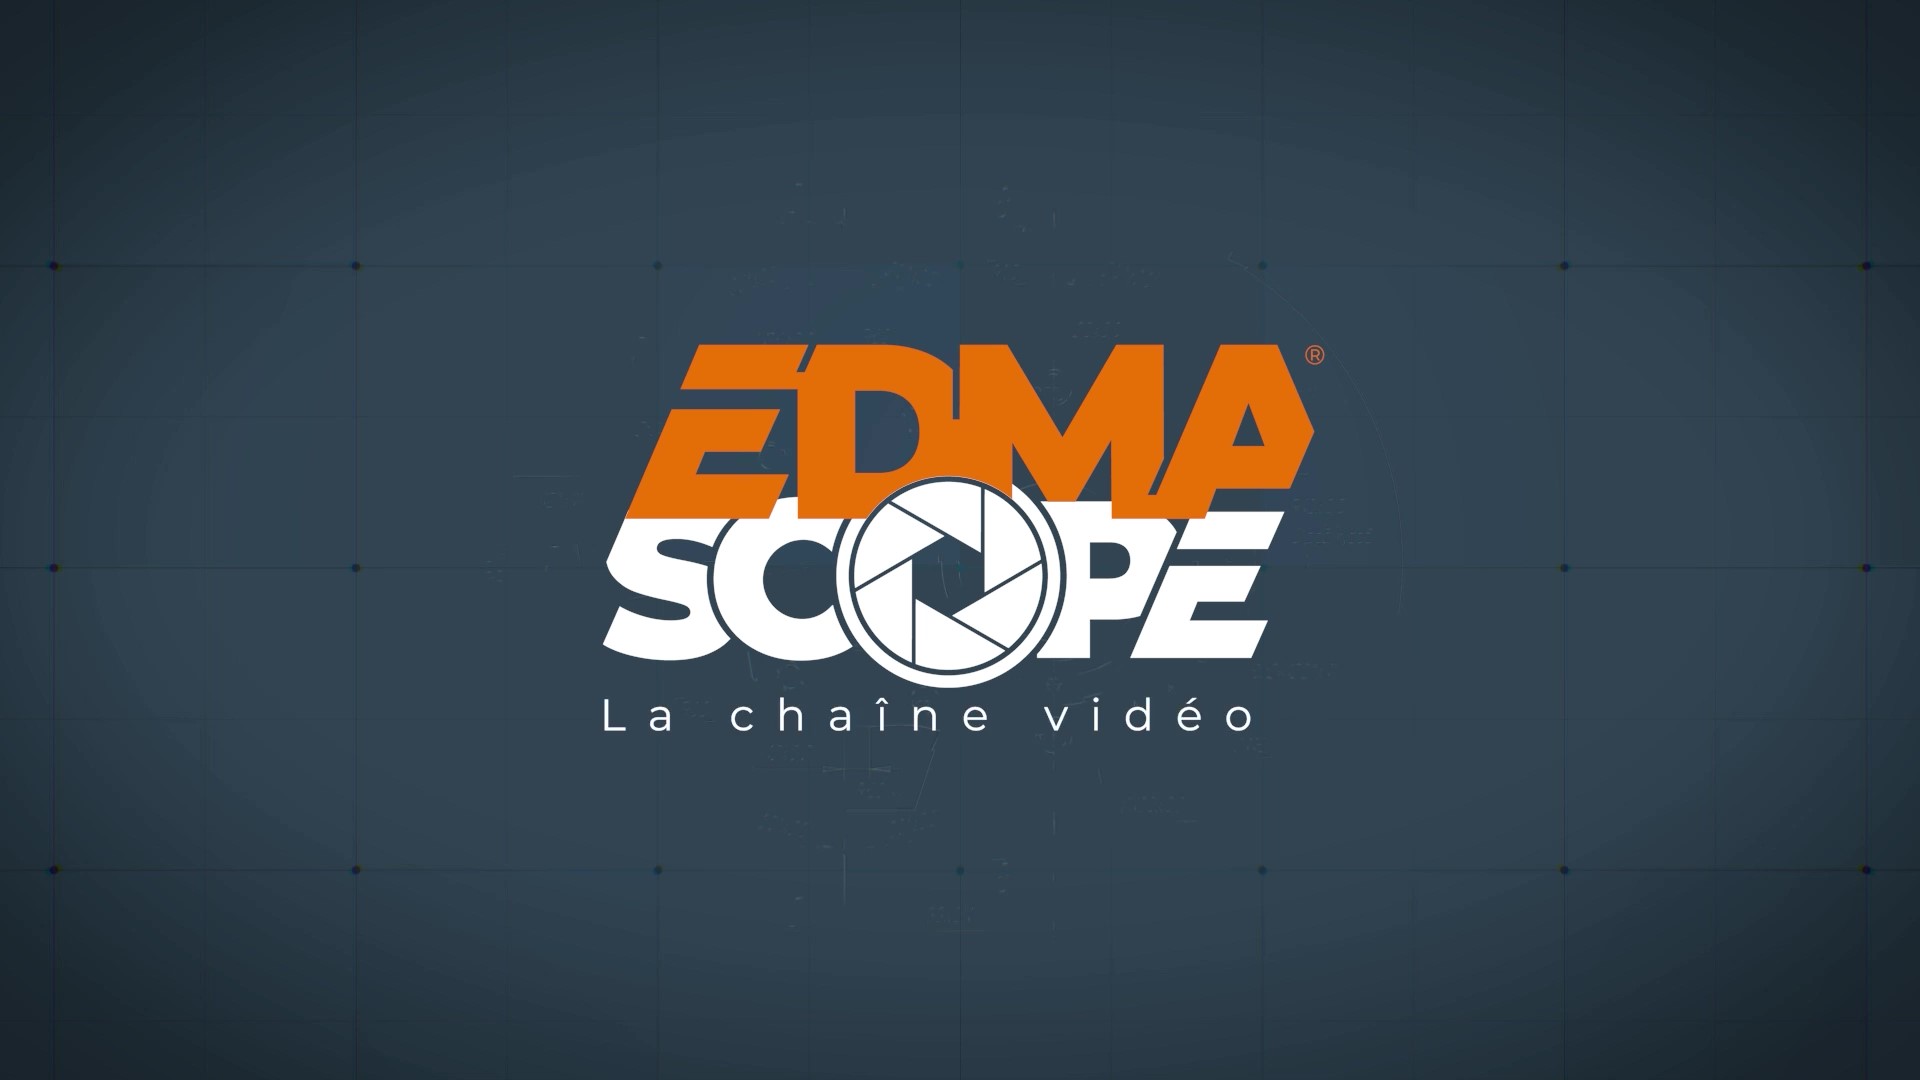 Une nouvelle chaîne vidéo pour tout (sa)voir sur les produits EDMA